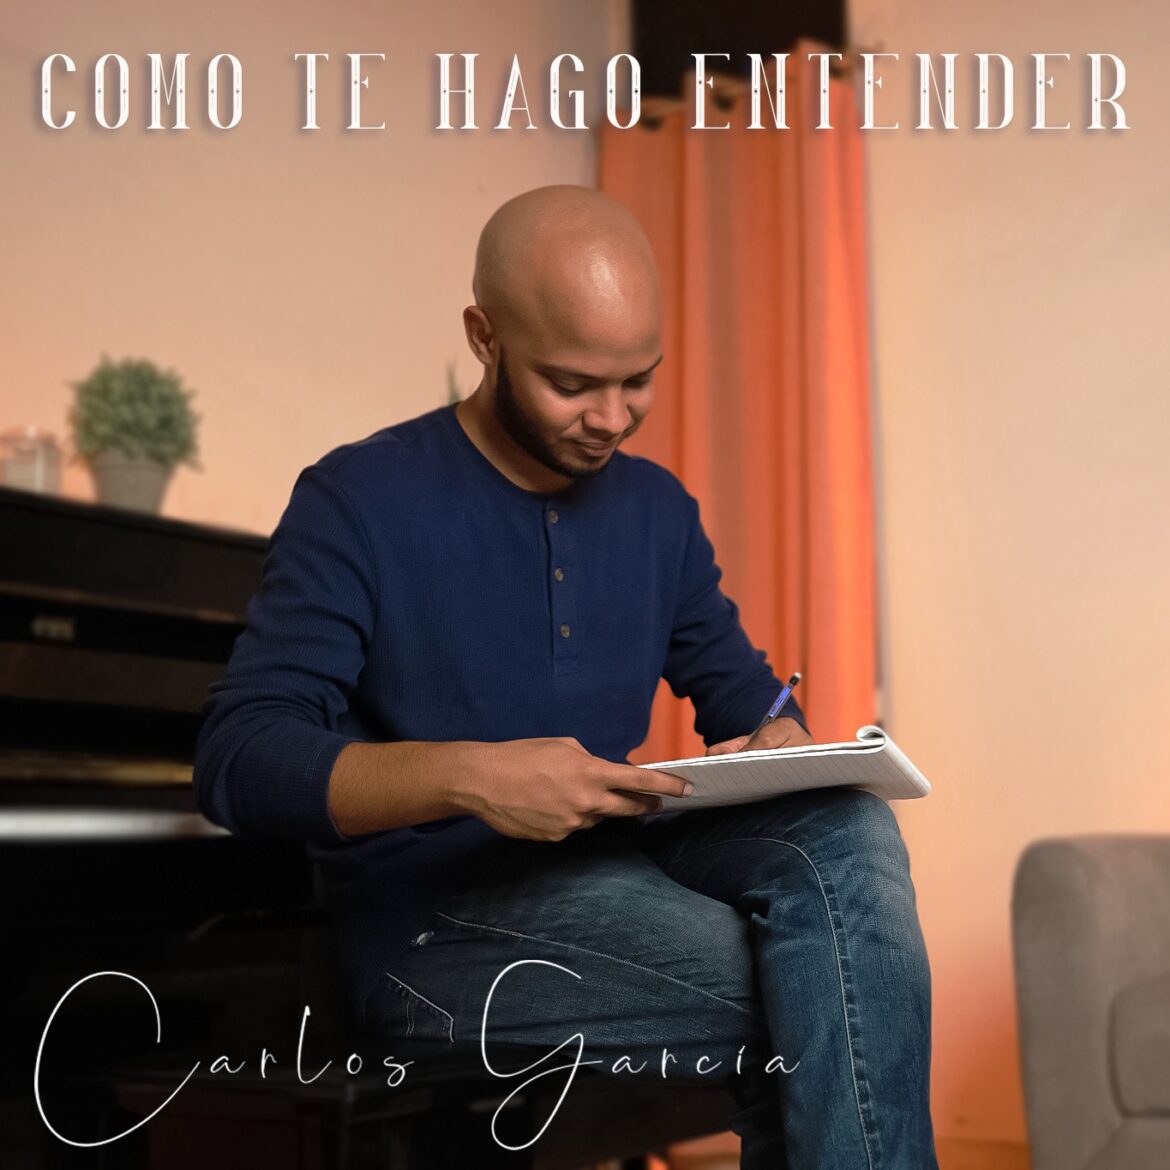 Carlos García regresa con su salsa romántica y sentimental